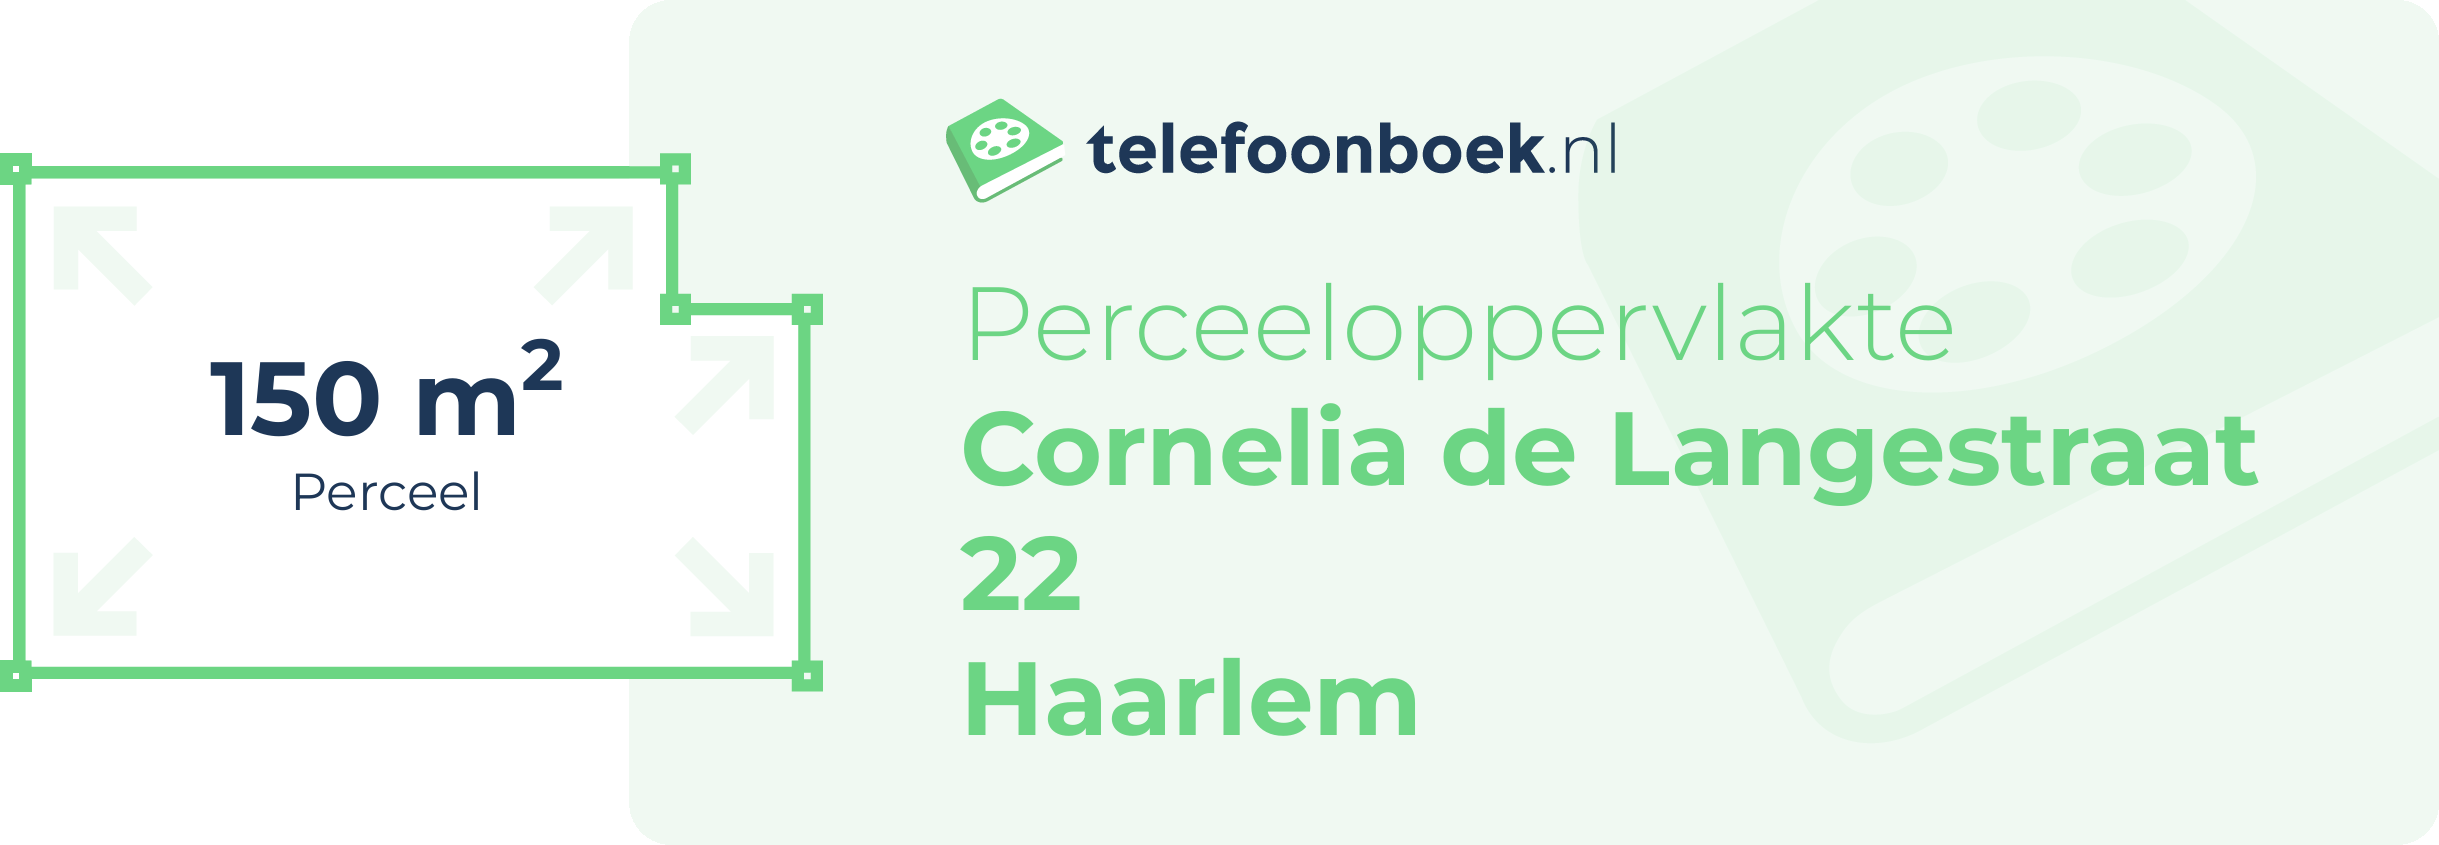 Perceeloppervlakte Cornelia De Langestraat 22 Haarlem